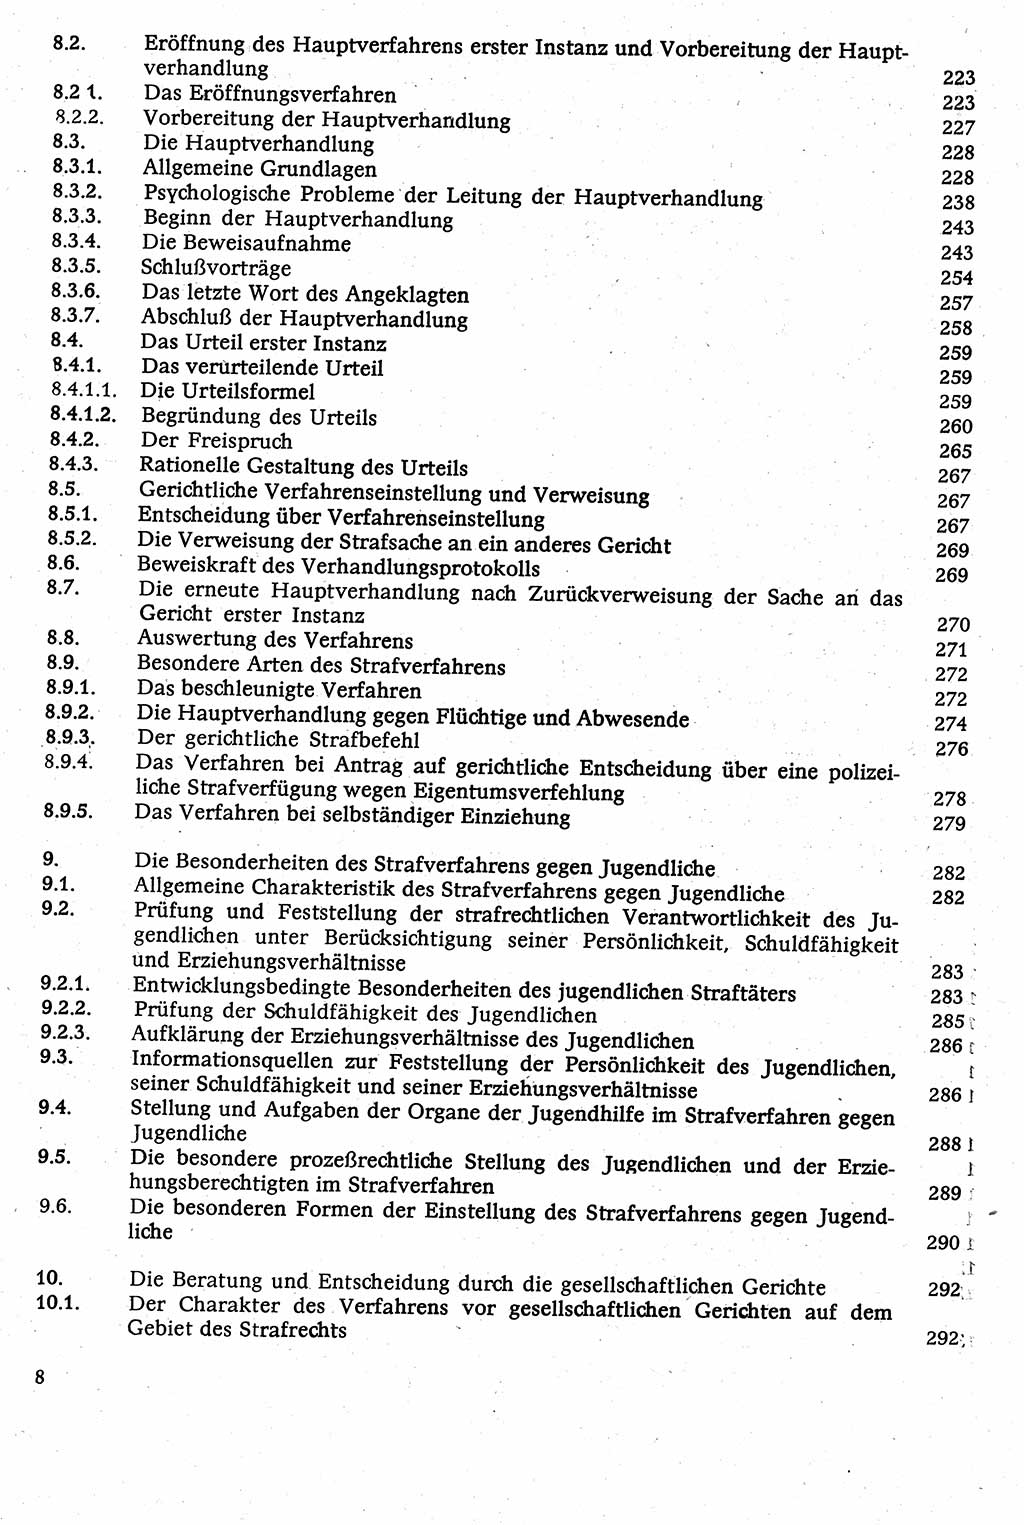 Strafverfahrensrecht [Deutsche Demokratische Republik (DDR)], Lehrbuch 1982, Seite 8 (Strafverf.-R. DDR Lb. 1982, S. 8)